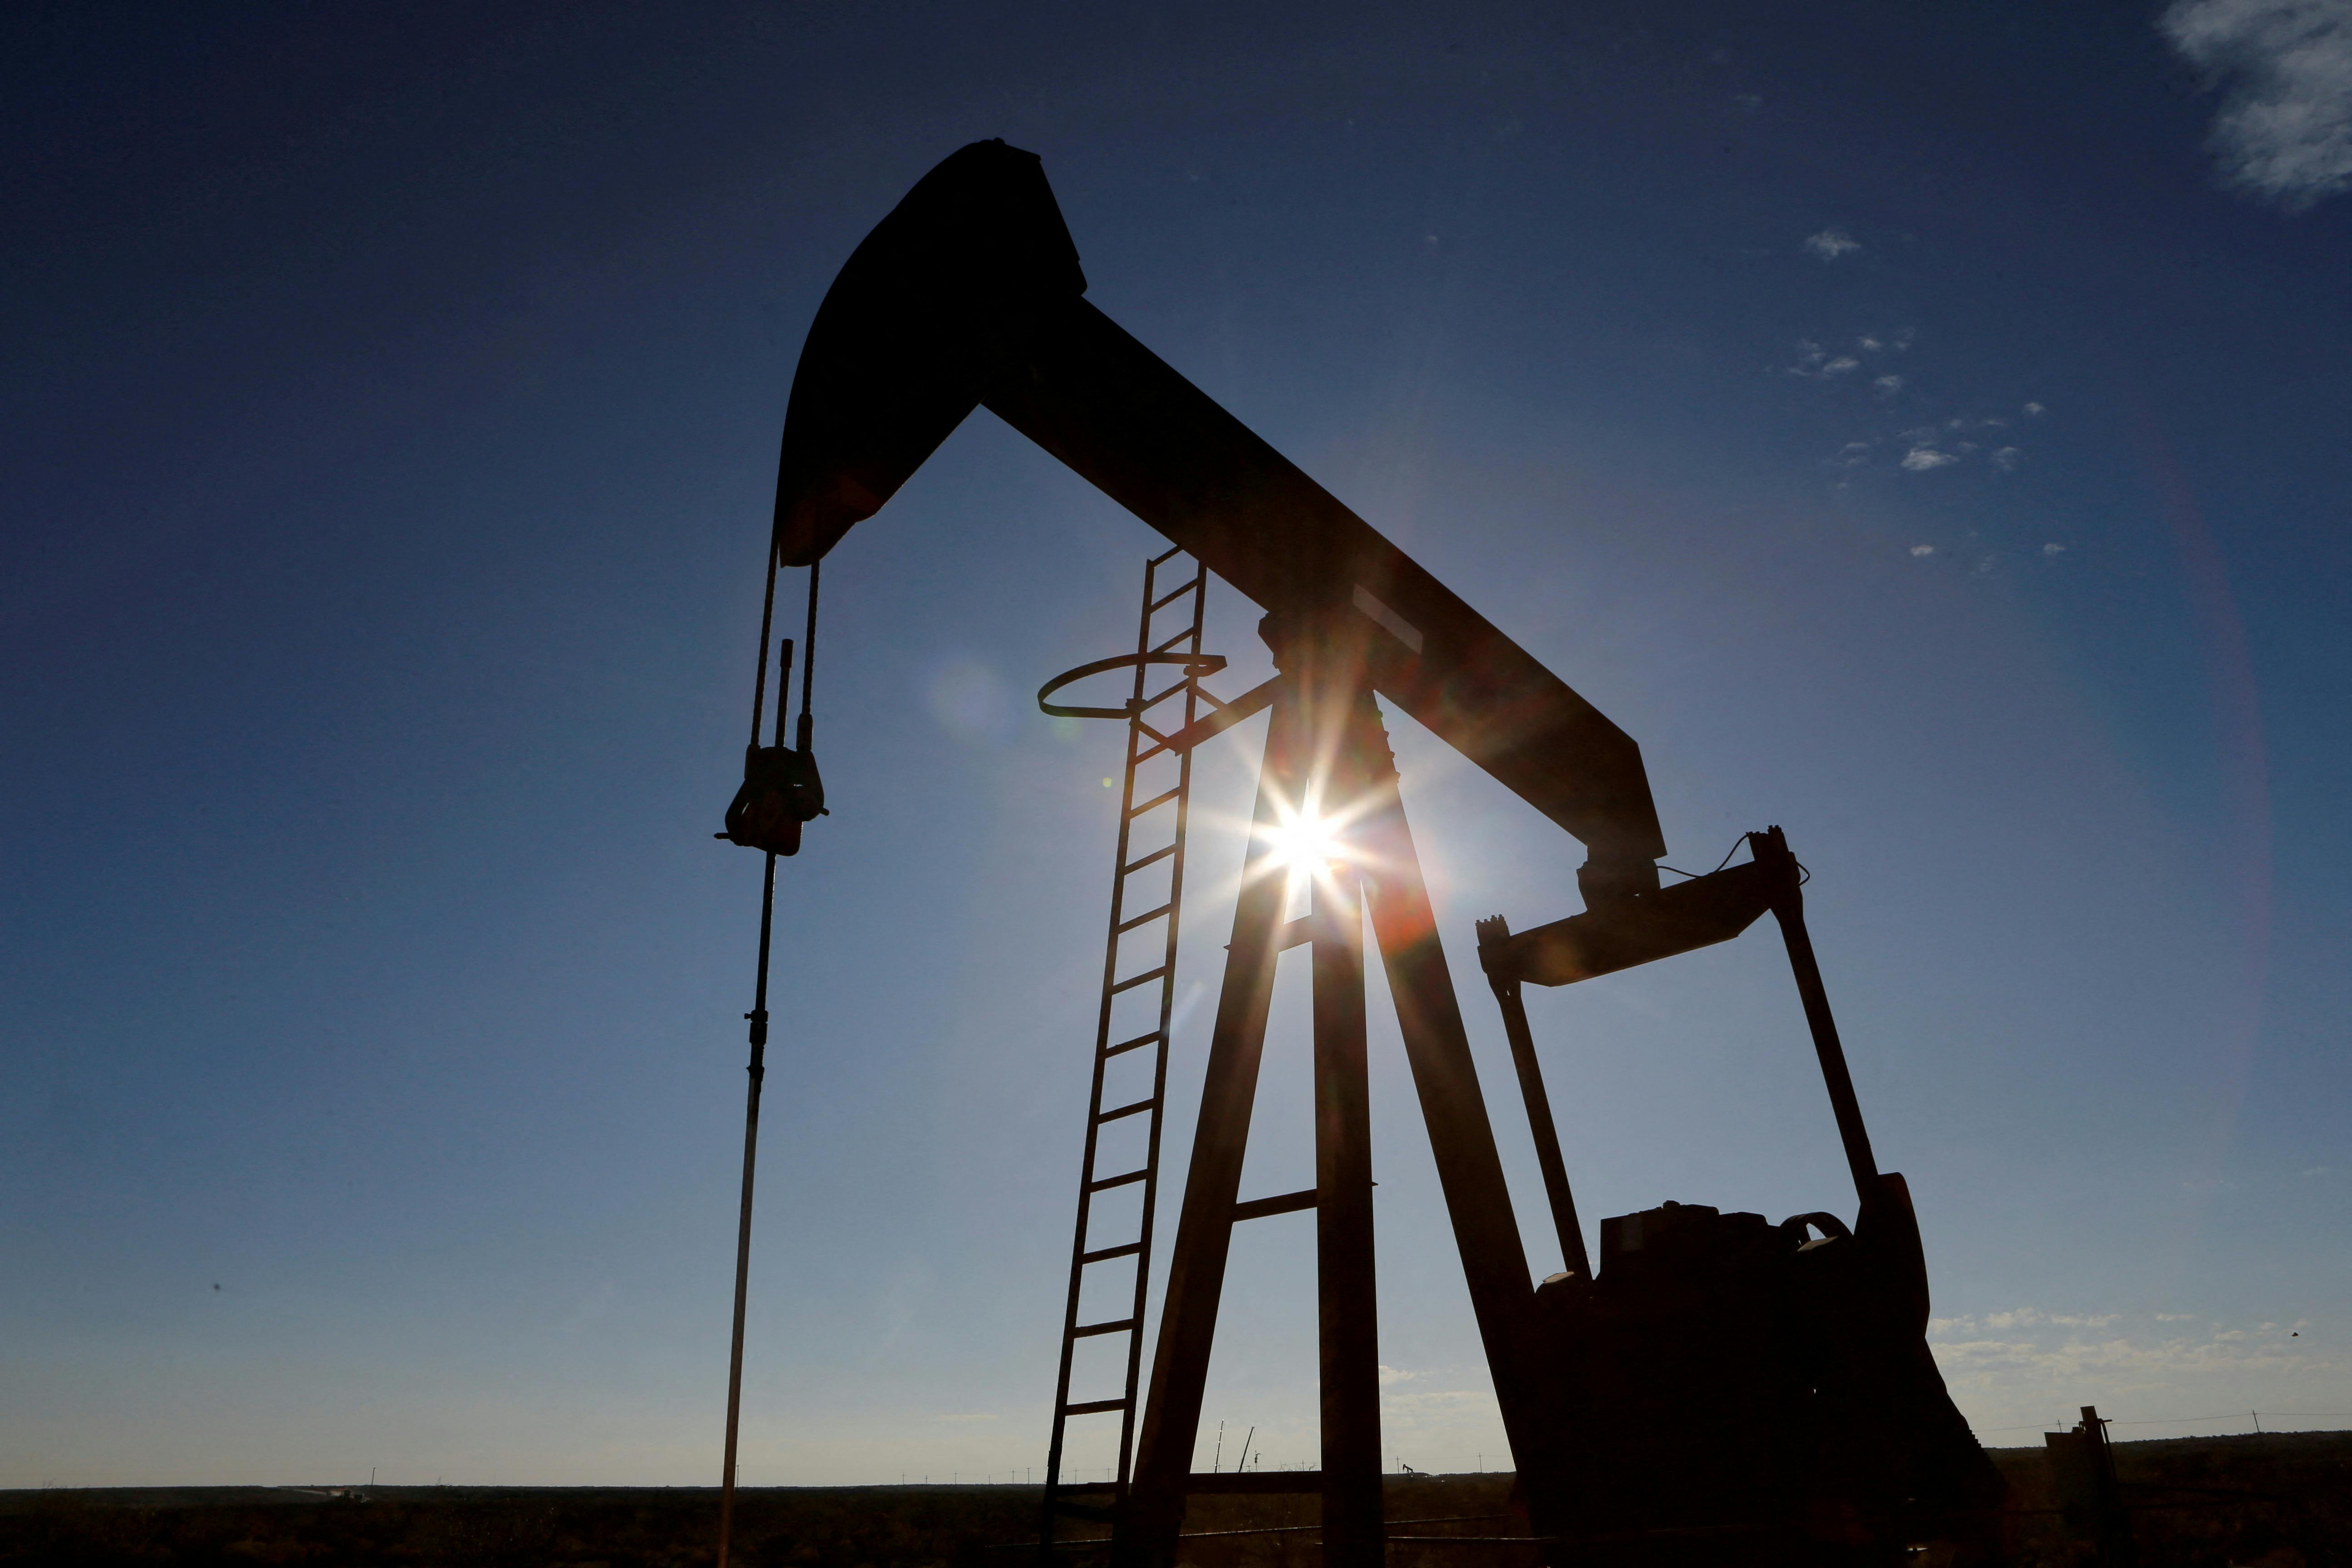 De stigende oliepriser&nbsp;kommer oveni tidligere reduktioner for 2023.